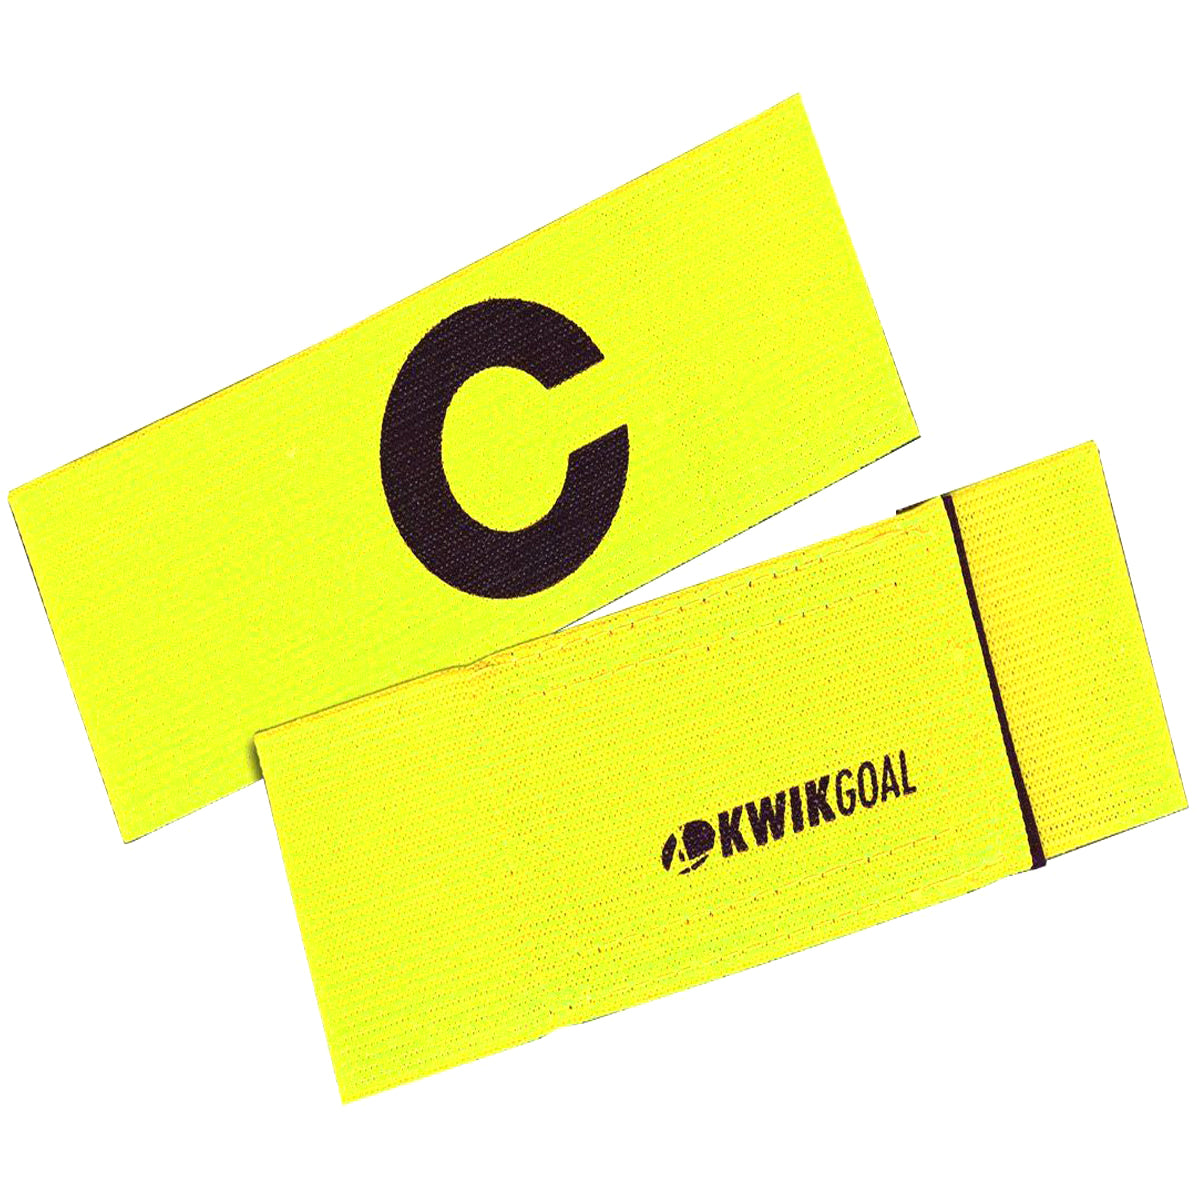 Kwikgoal Captain "C" Arm Bands | 19B12 Training equipment Kwikgoal High-Vis Yellow 